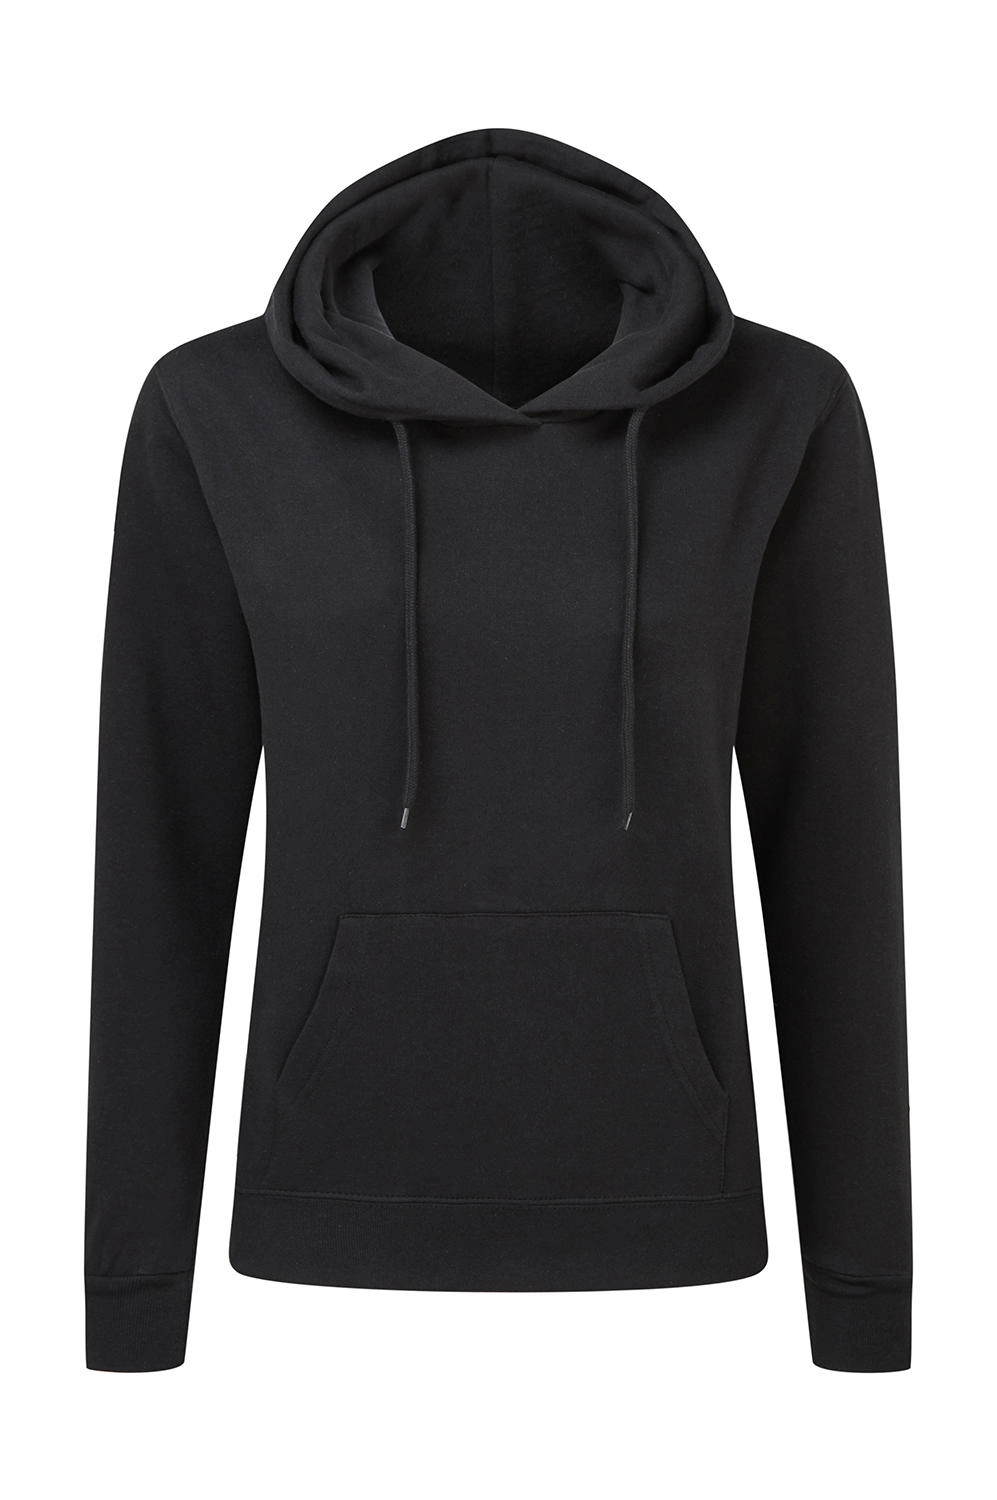 Hooded Sweatshirt Women zum Besticken und Bedrucken in der Farbe Black mit Ihren Logo, Schriftzug oder Motiv.